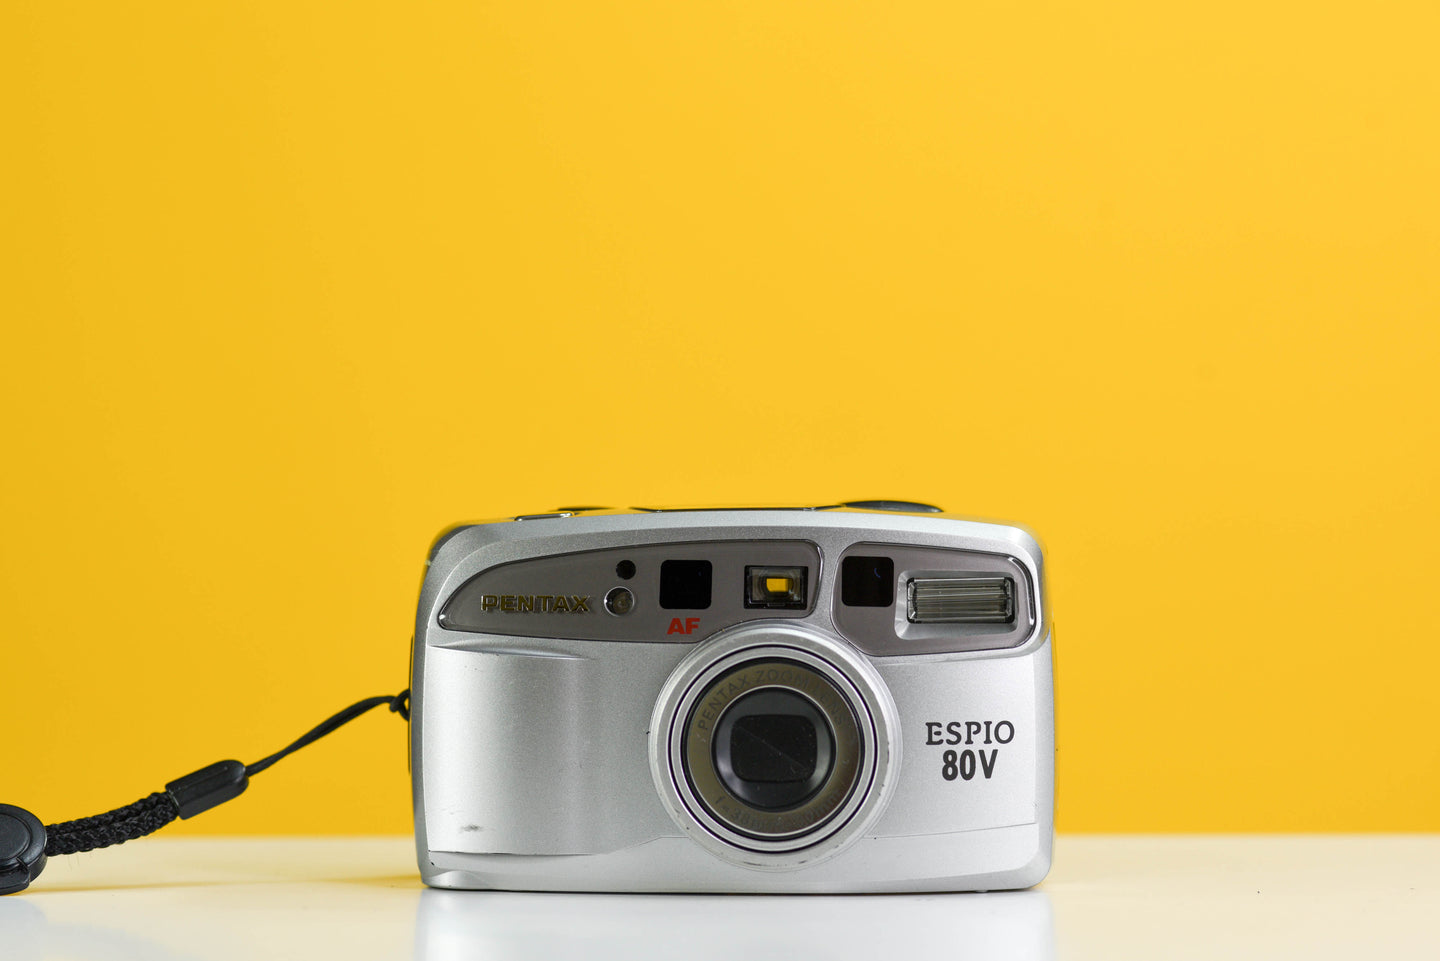 Pentax Espio 80v 35mm Film Camera Point and Shoot